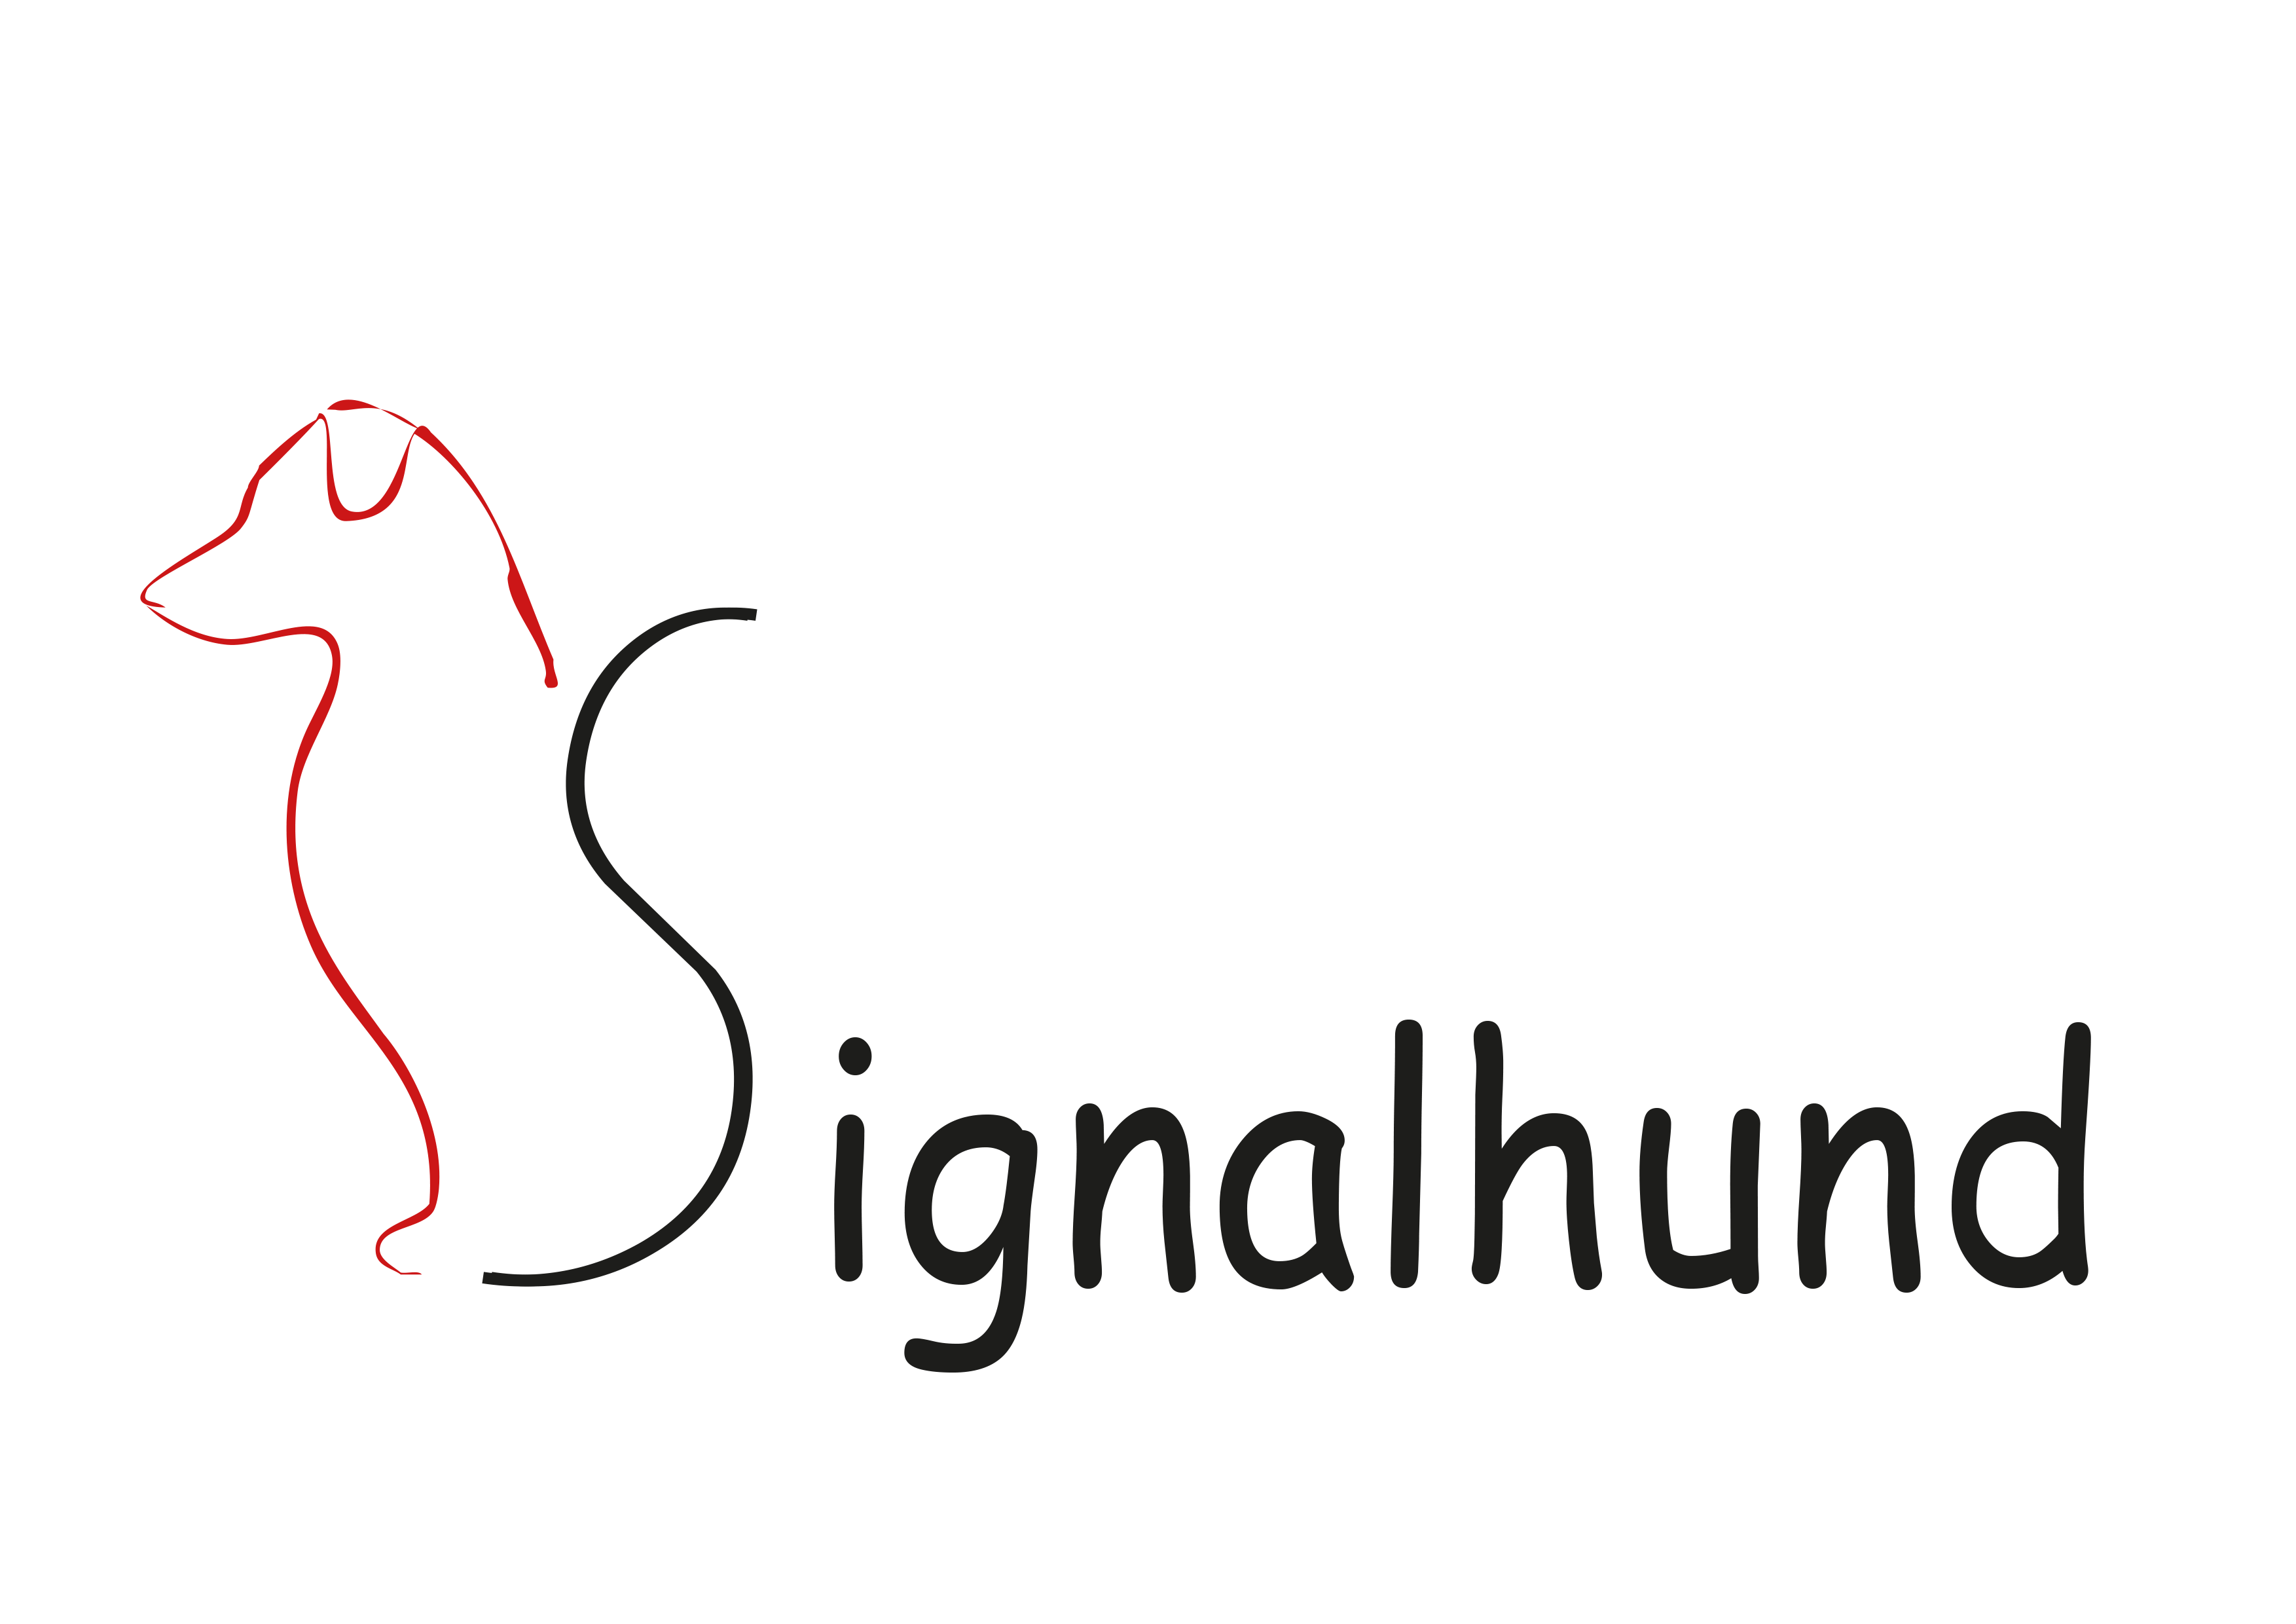 Signalhund